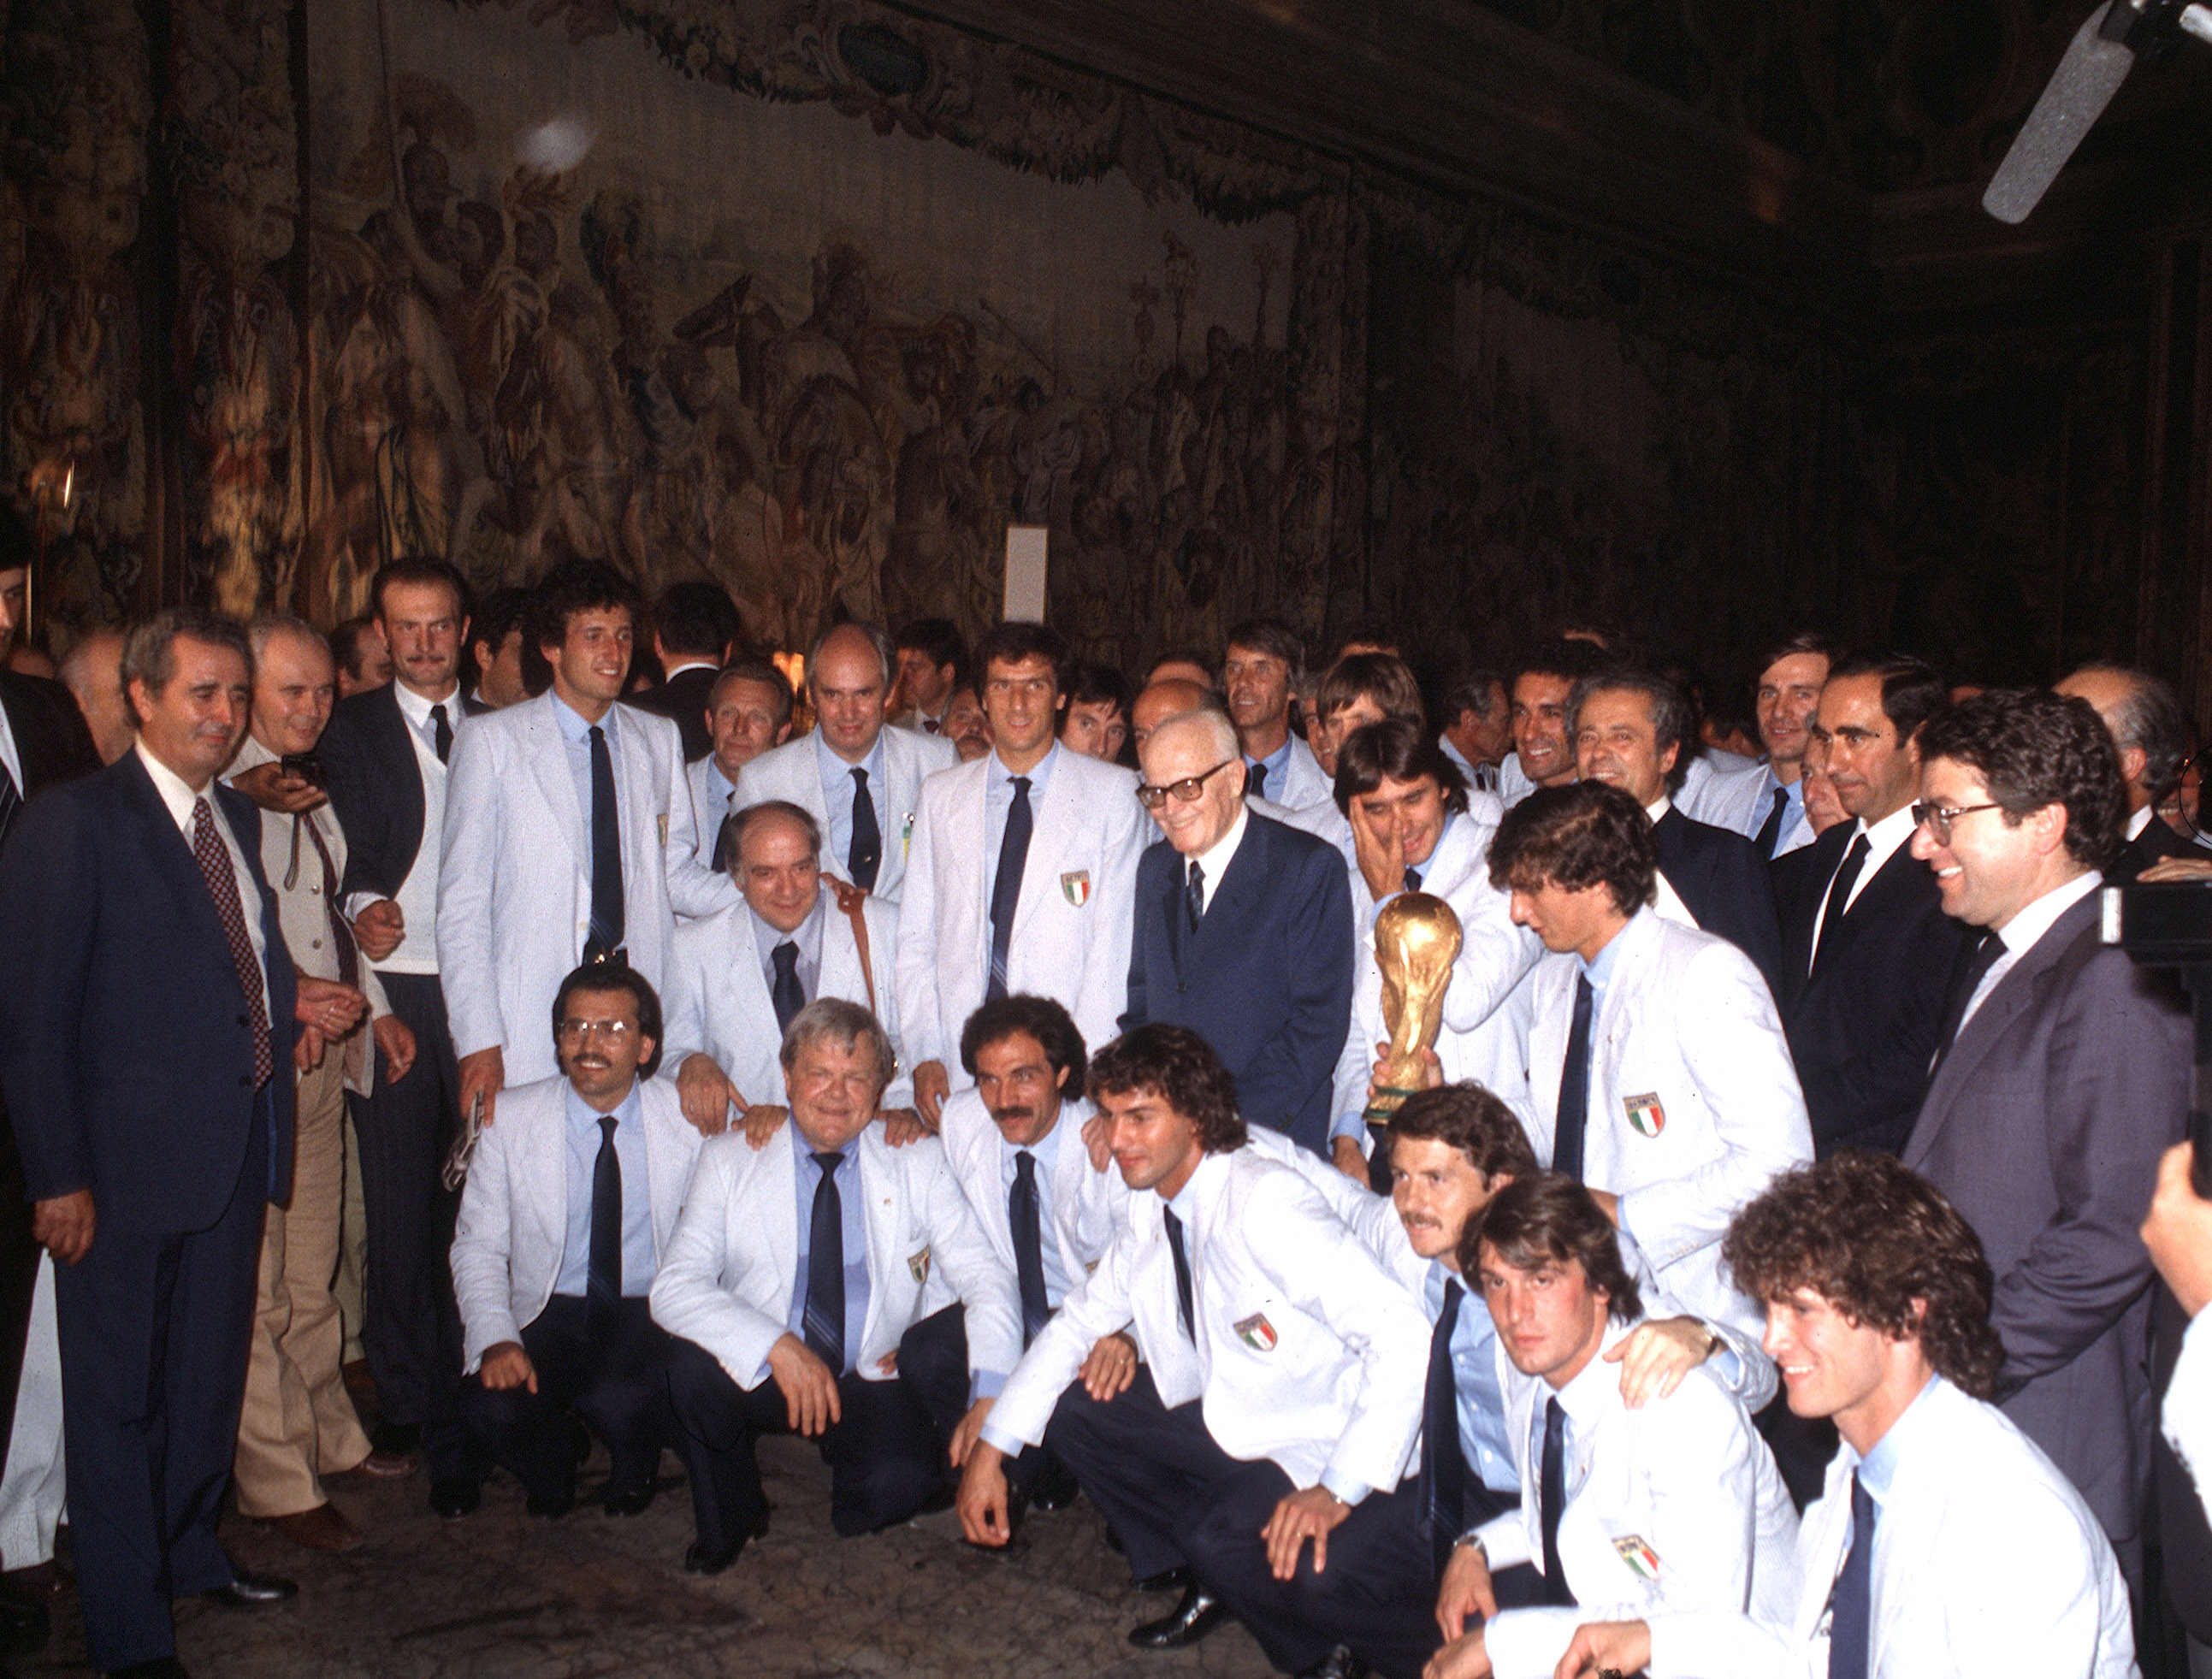 Luglio 1982: una foto ricordo insieme alla nazionale italiana di calcio dopo la vittoria della Coppa del mondo in Spagna. Pertini segue la finale in tribuna a Madrid